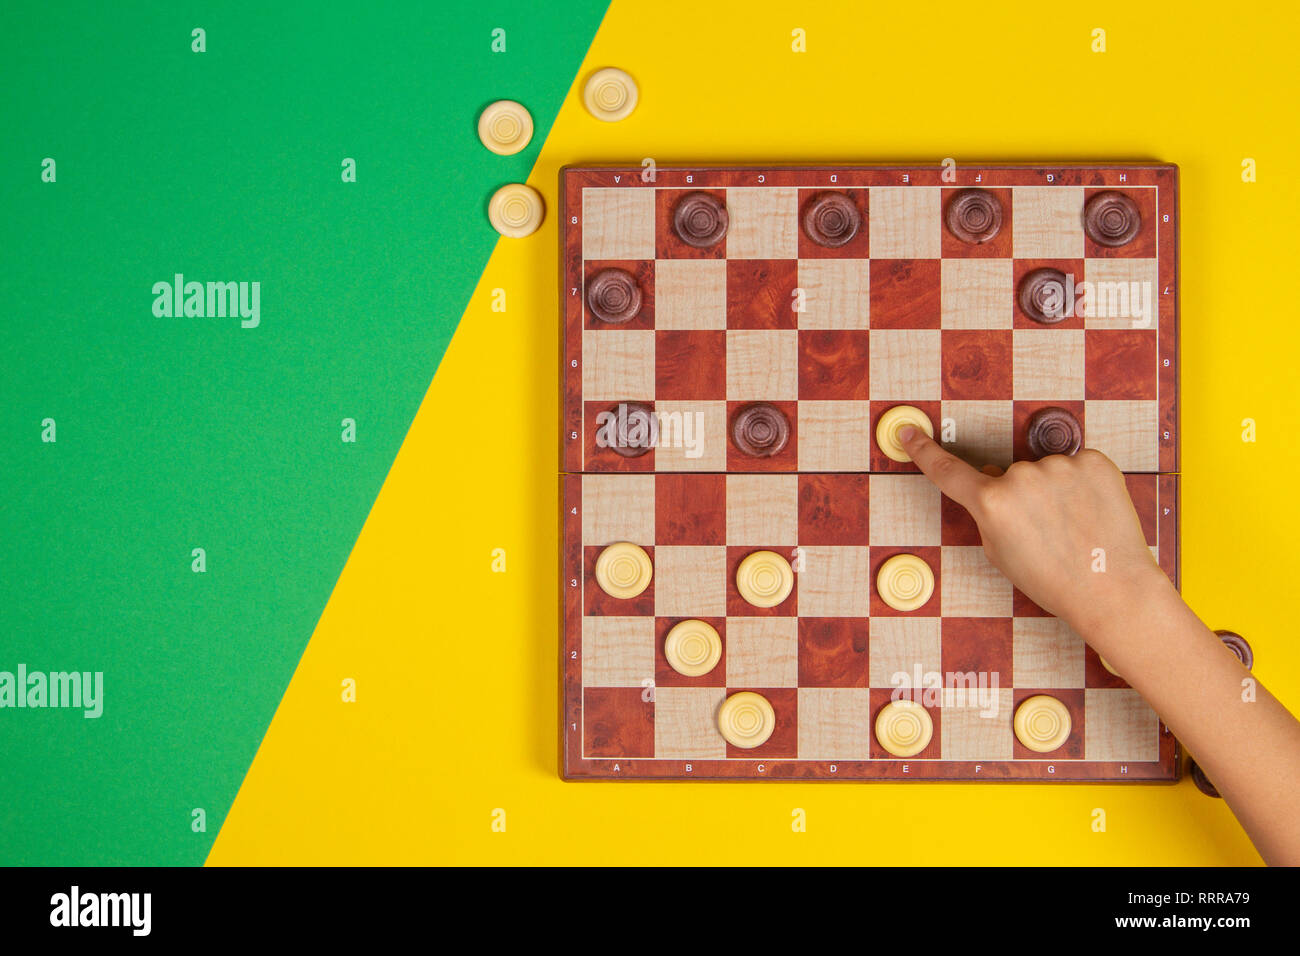 Bambino mano giocando a Dama su checker board game over giallo e sfondo verde, vista dall'alto Foto Stock